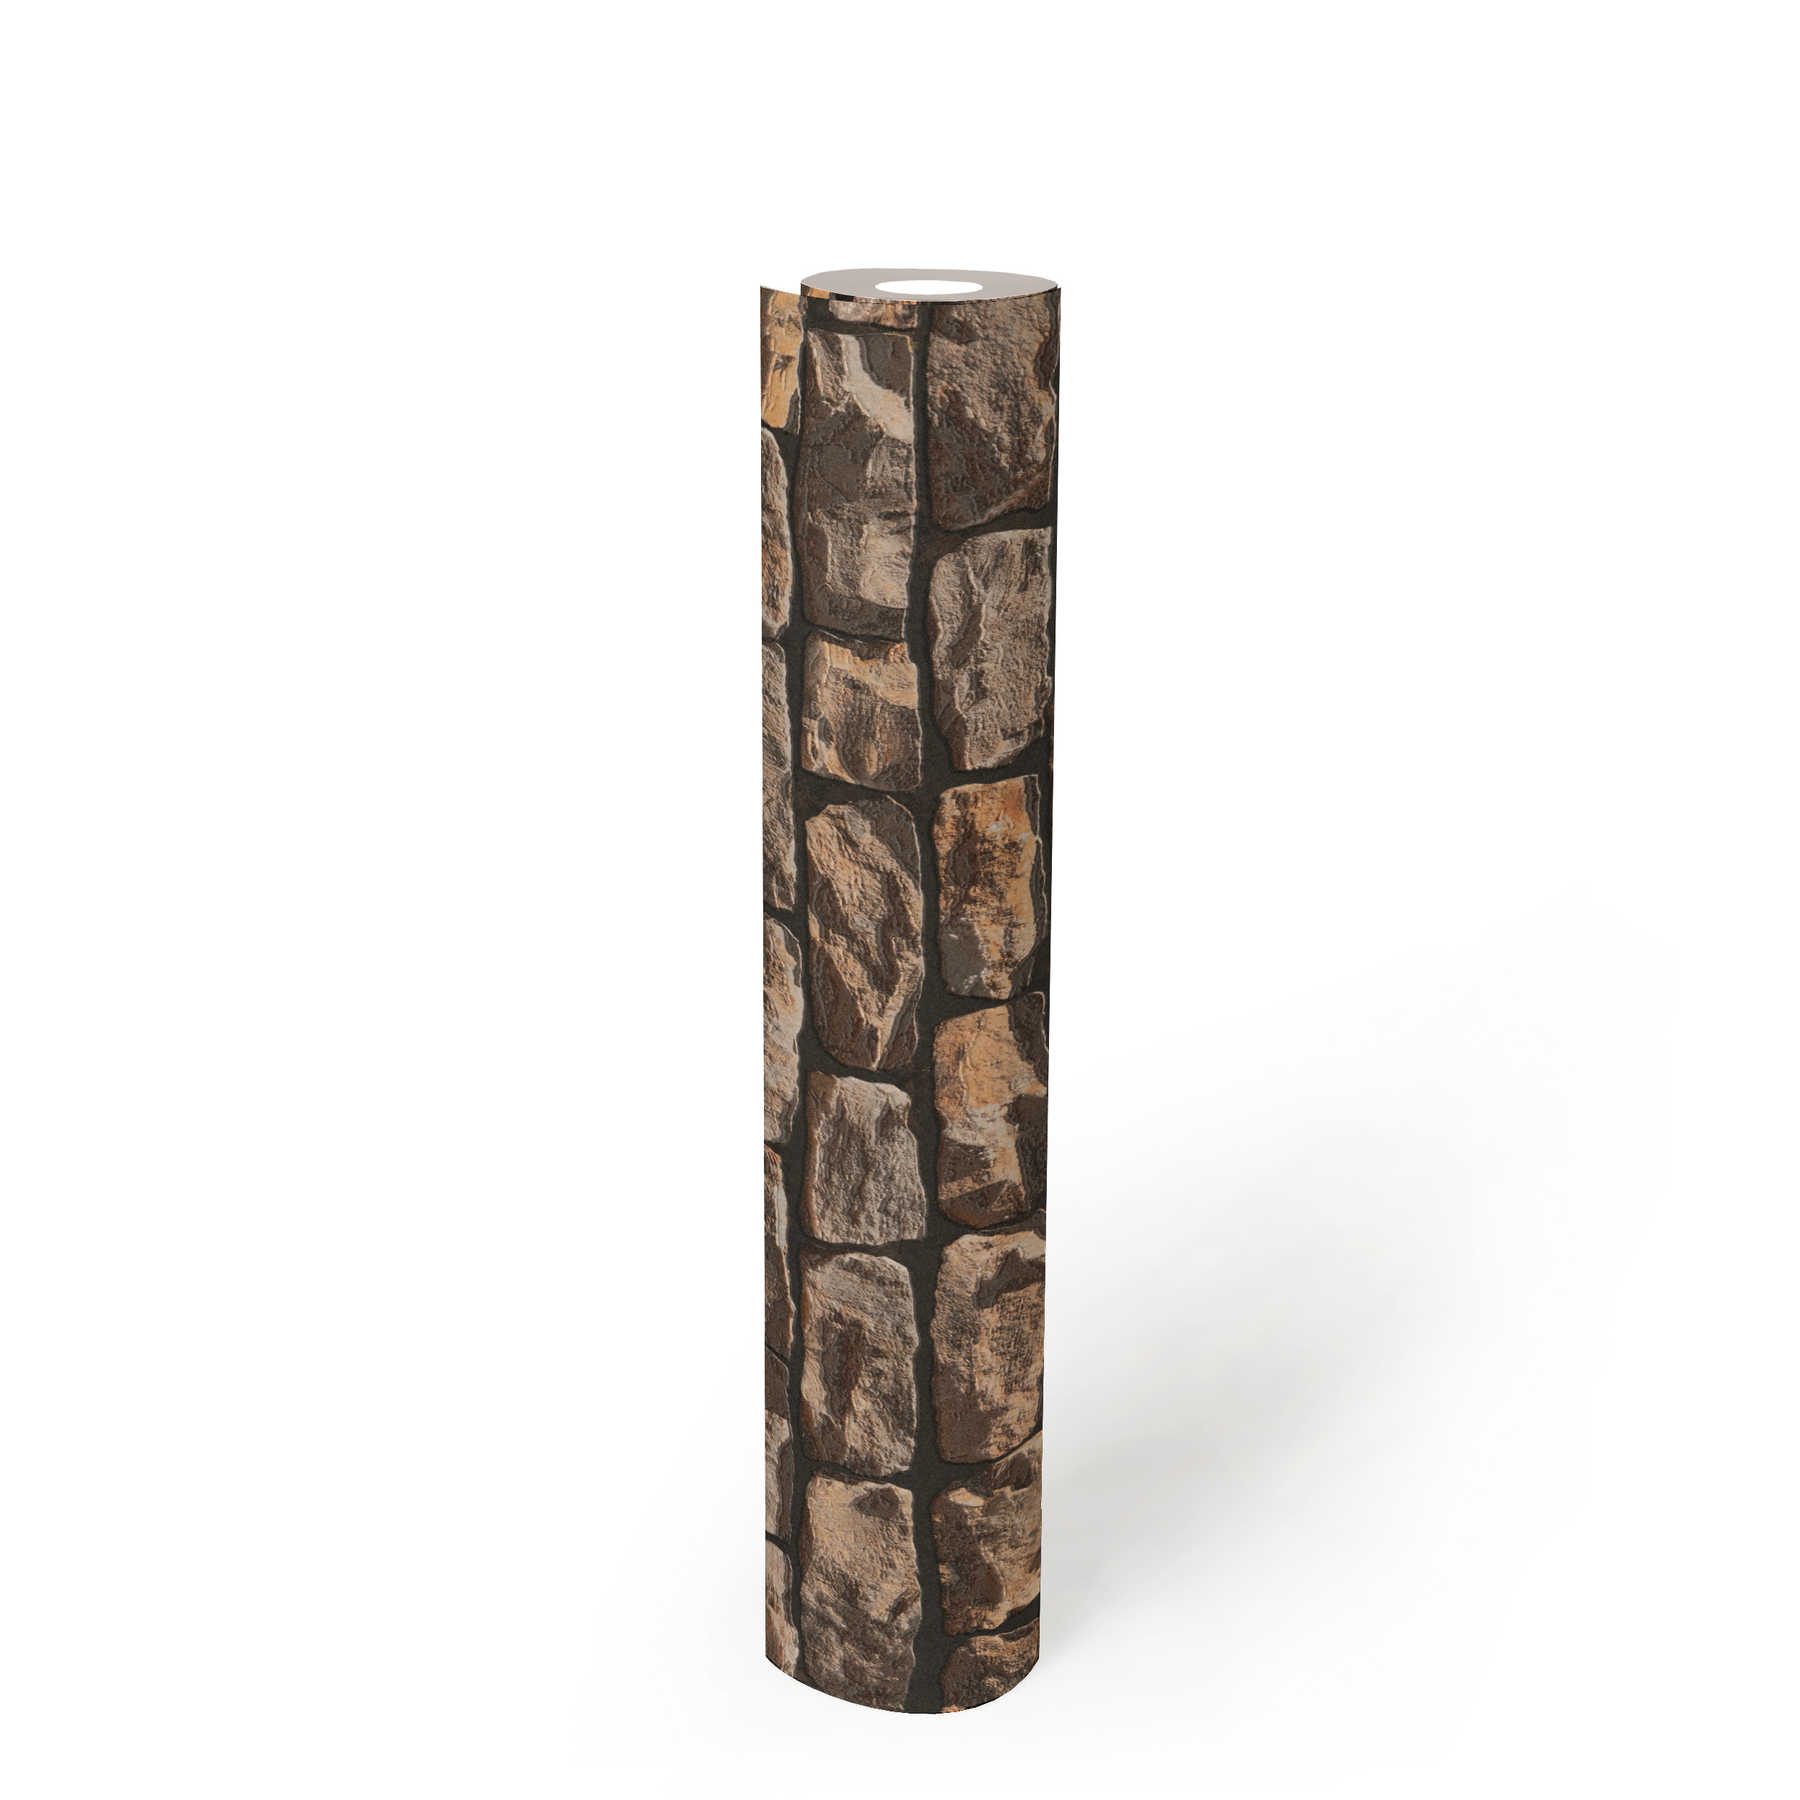             Mauerwerk-Tapete mit realistischen Natursteinen – Braun, Beige, Schwarz
        